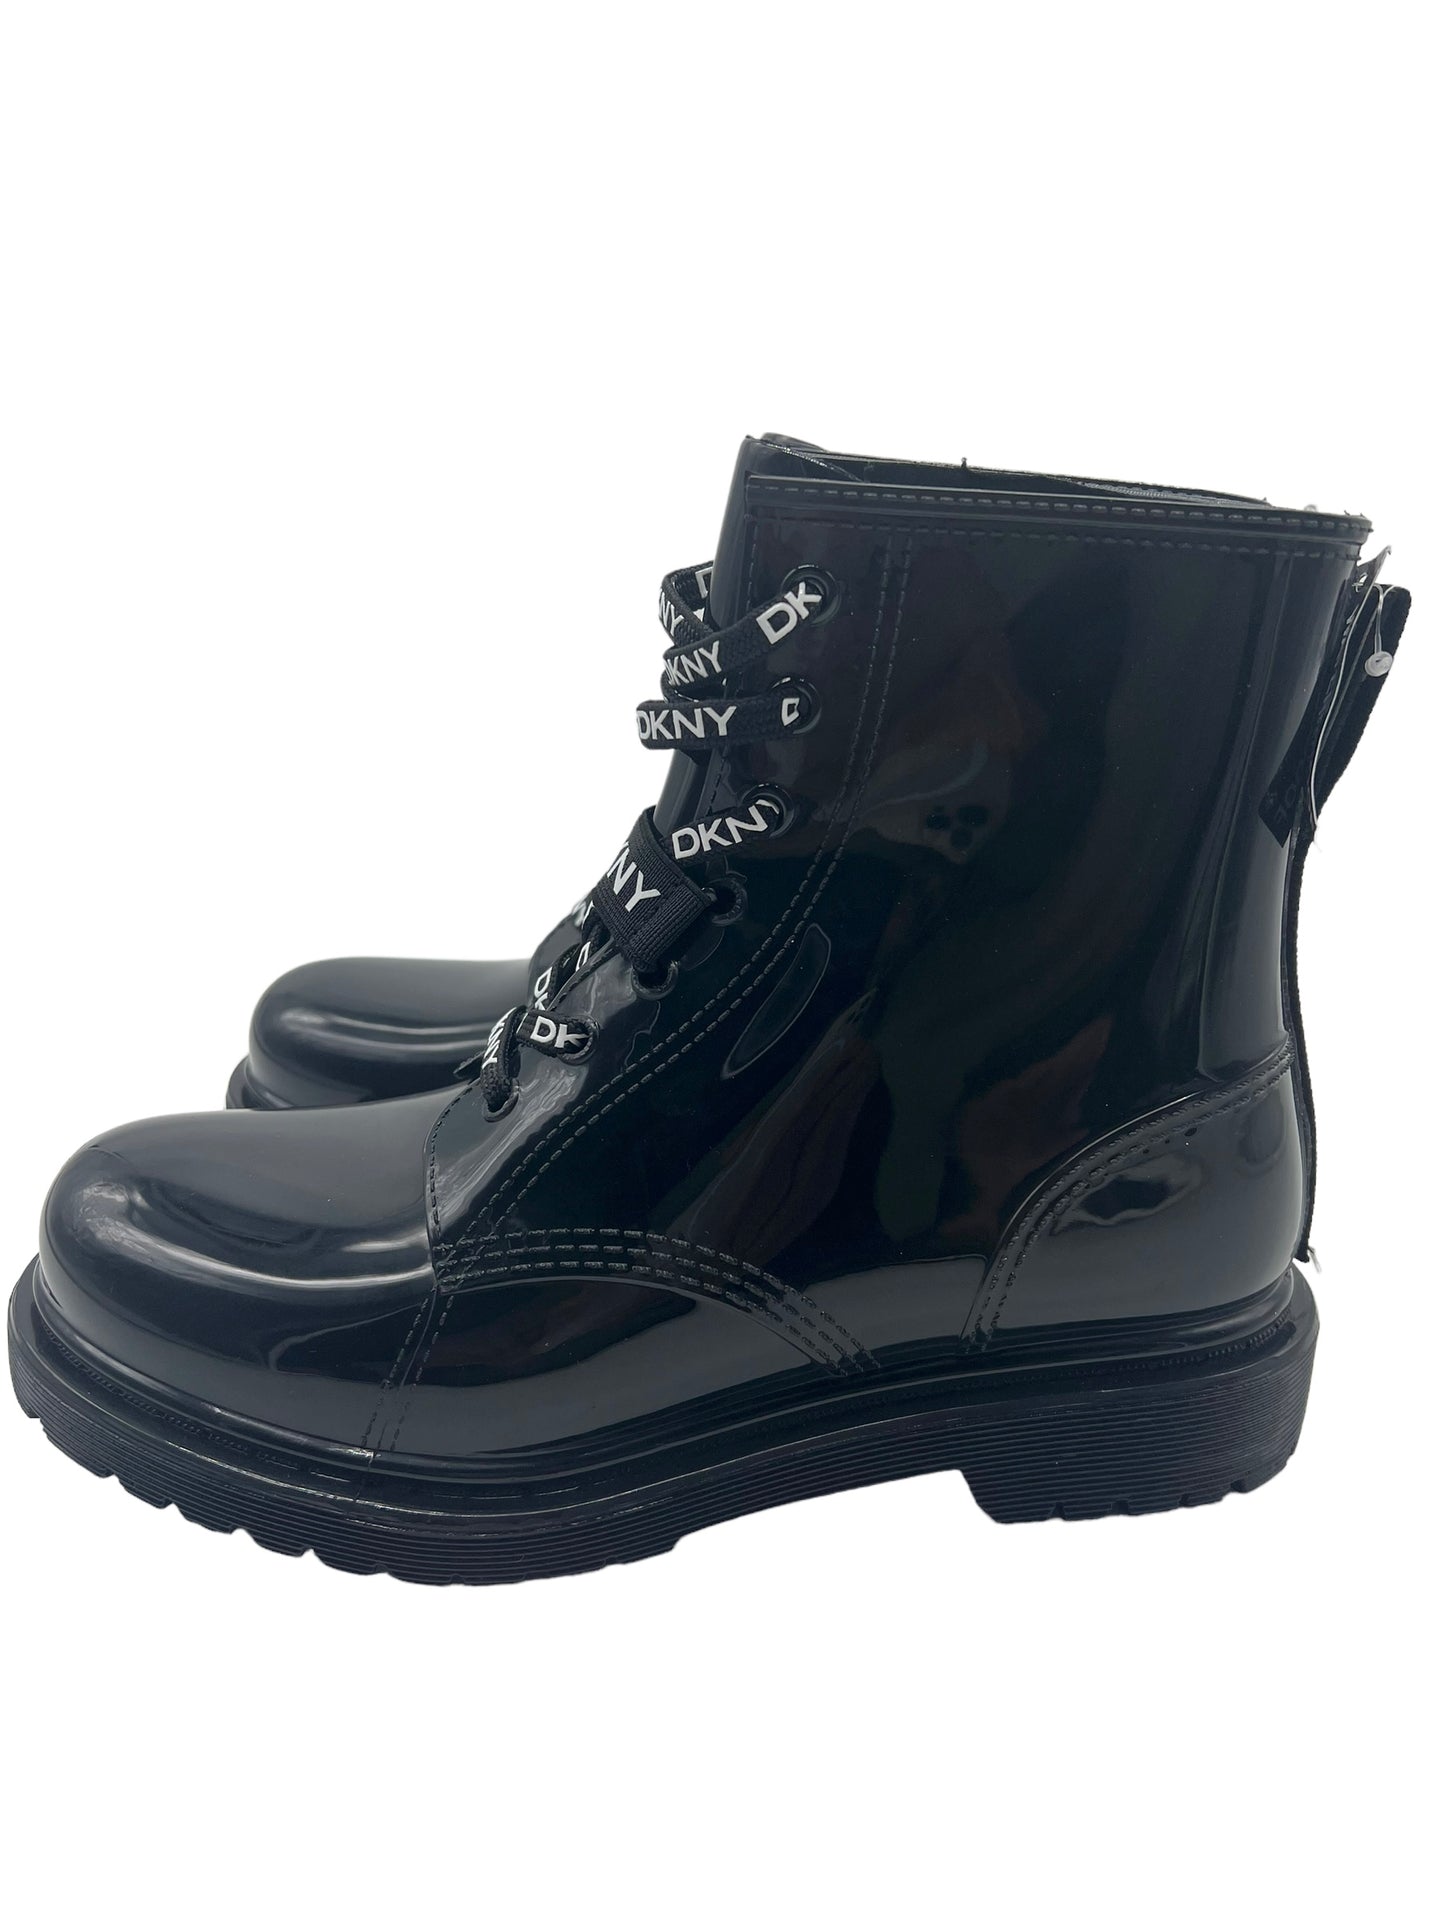 DKNY Black Tilly Logo Size 8 Rain Boots